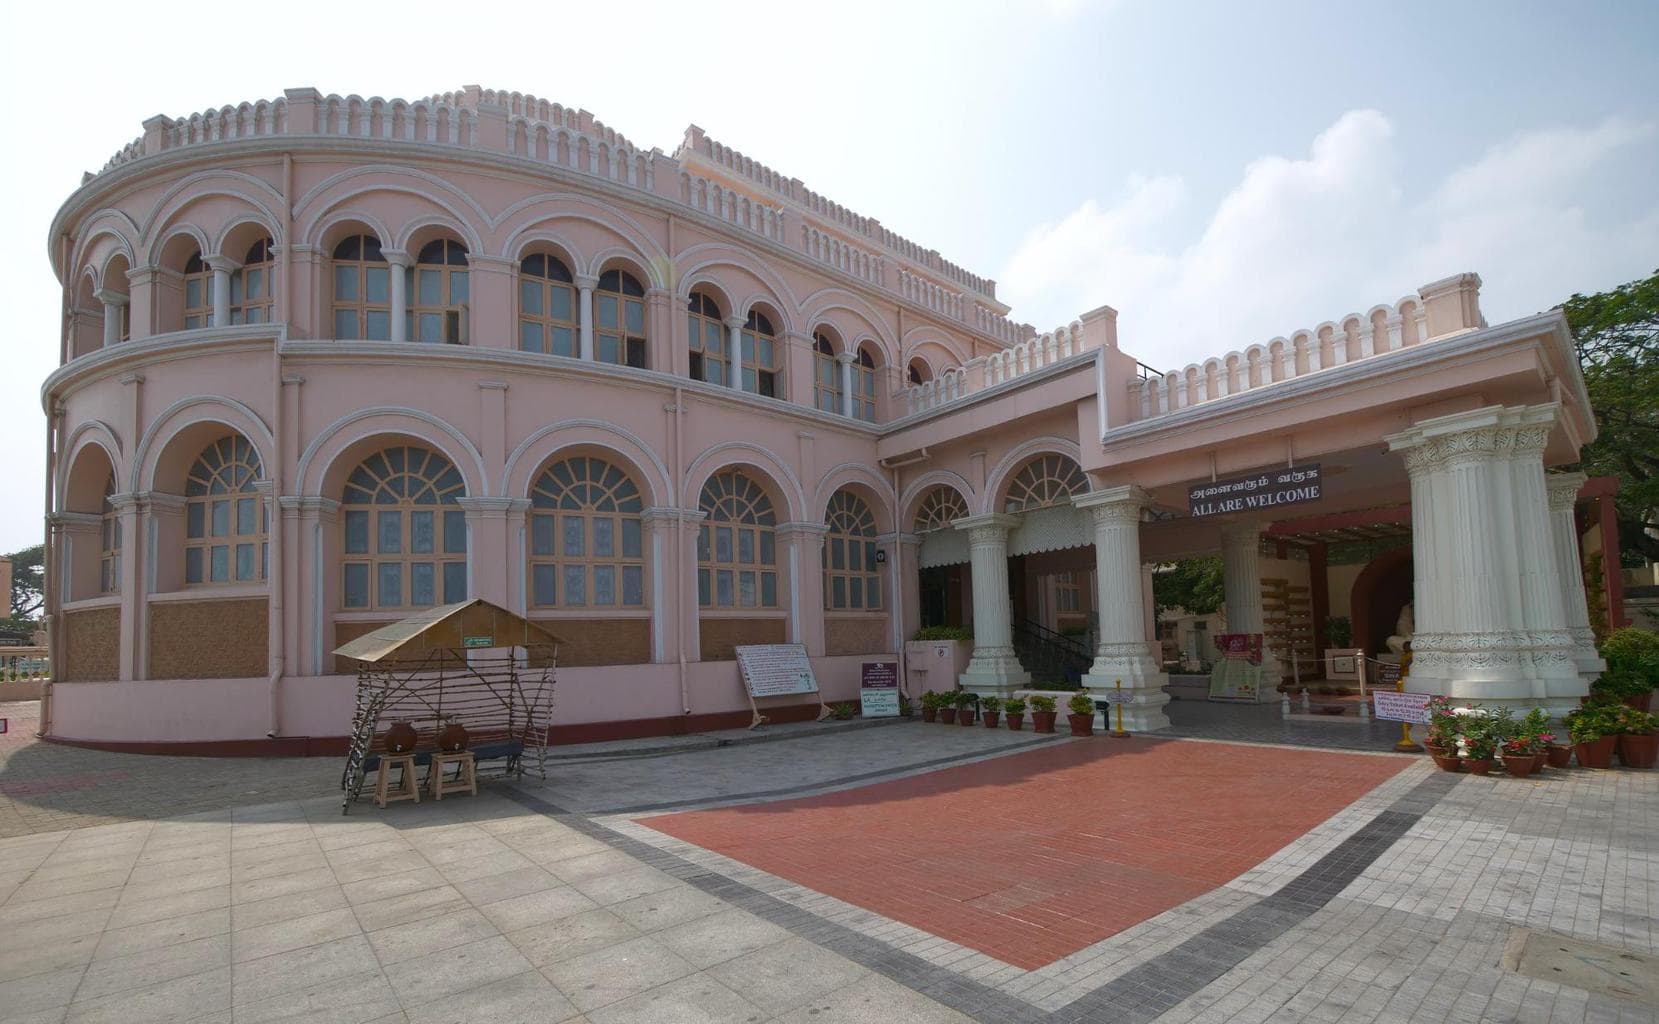 Vivekananda House